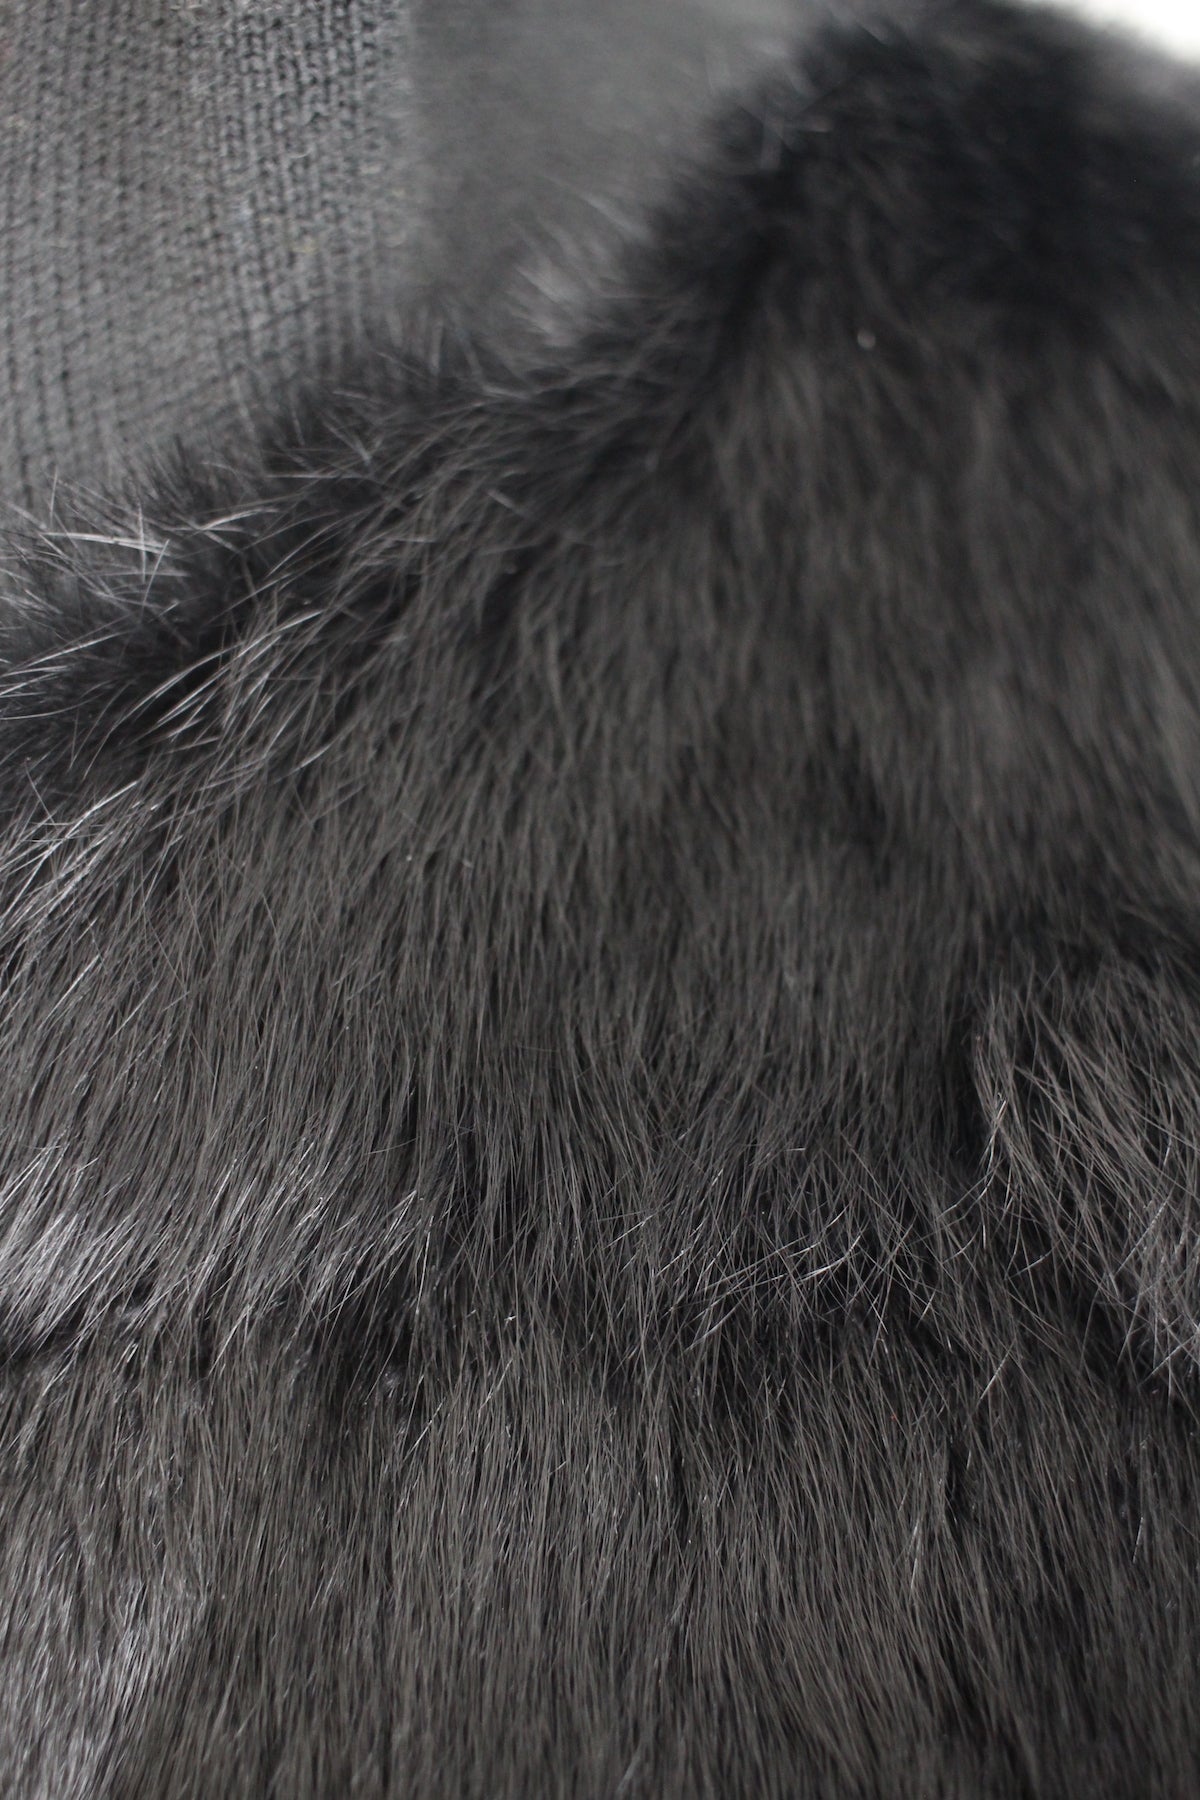 Vintage Black Rabbit Fur Bomber Jacket with Leather Detail